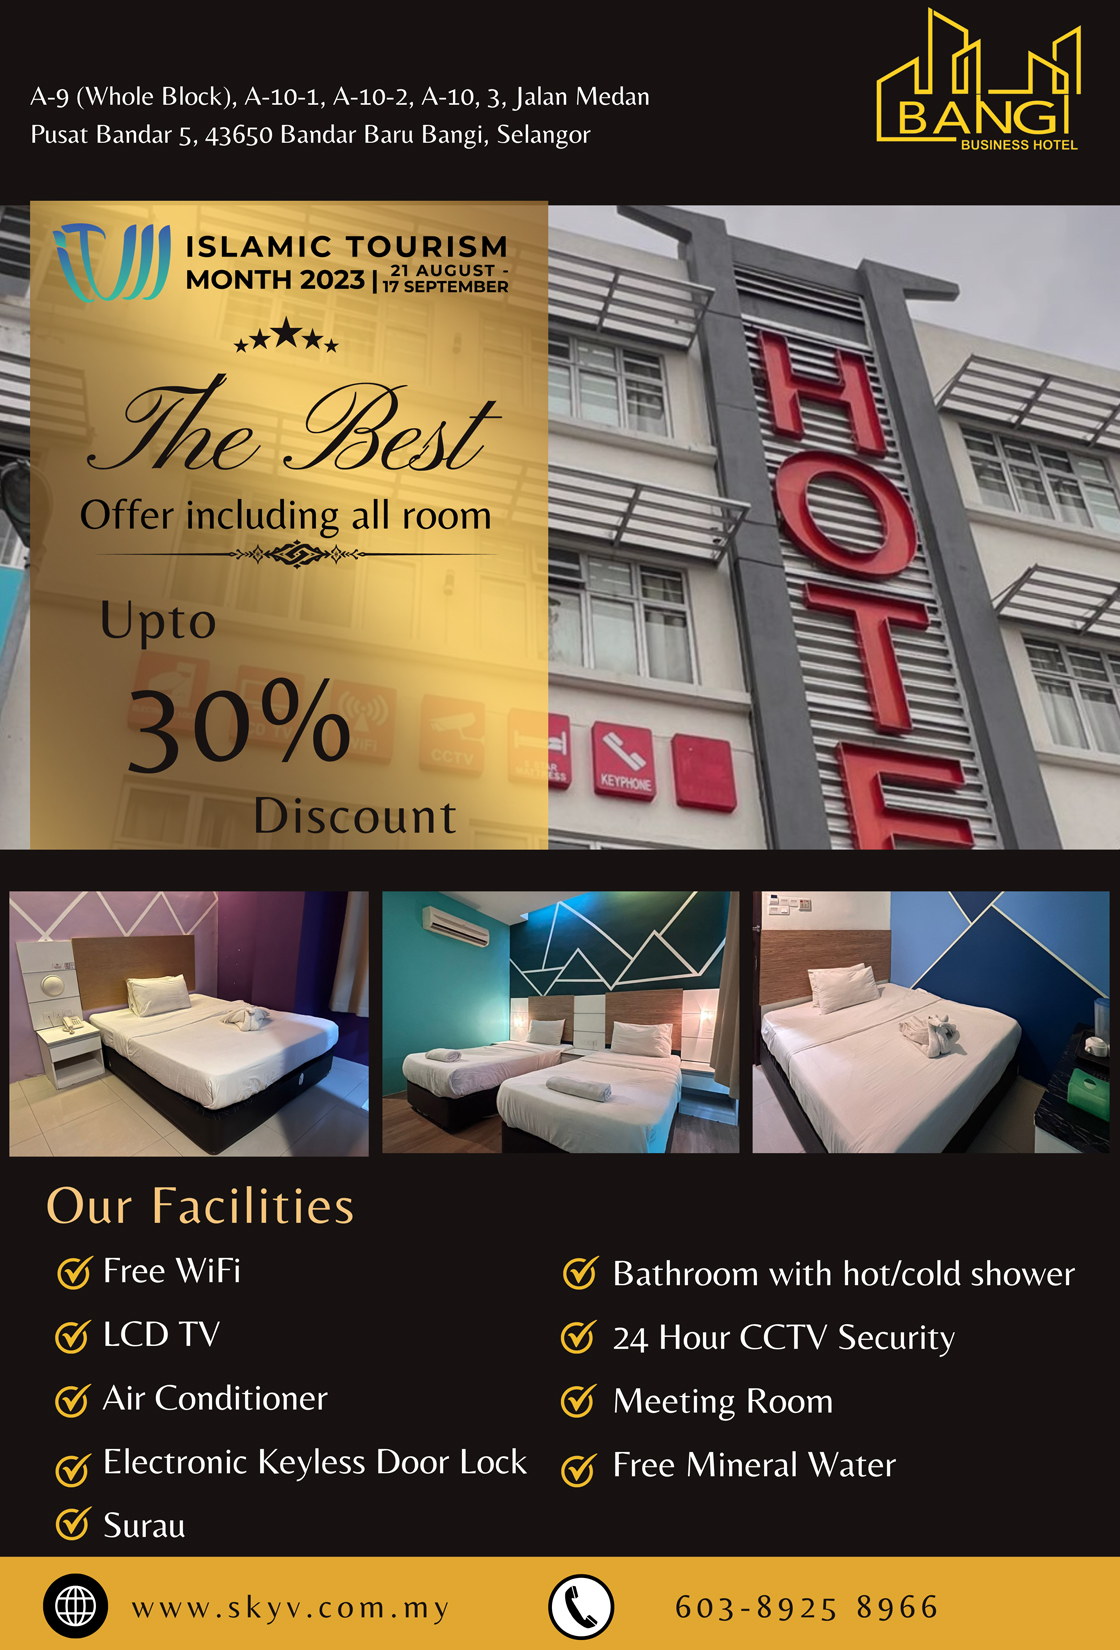 Bangi Business Hotel